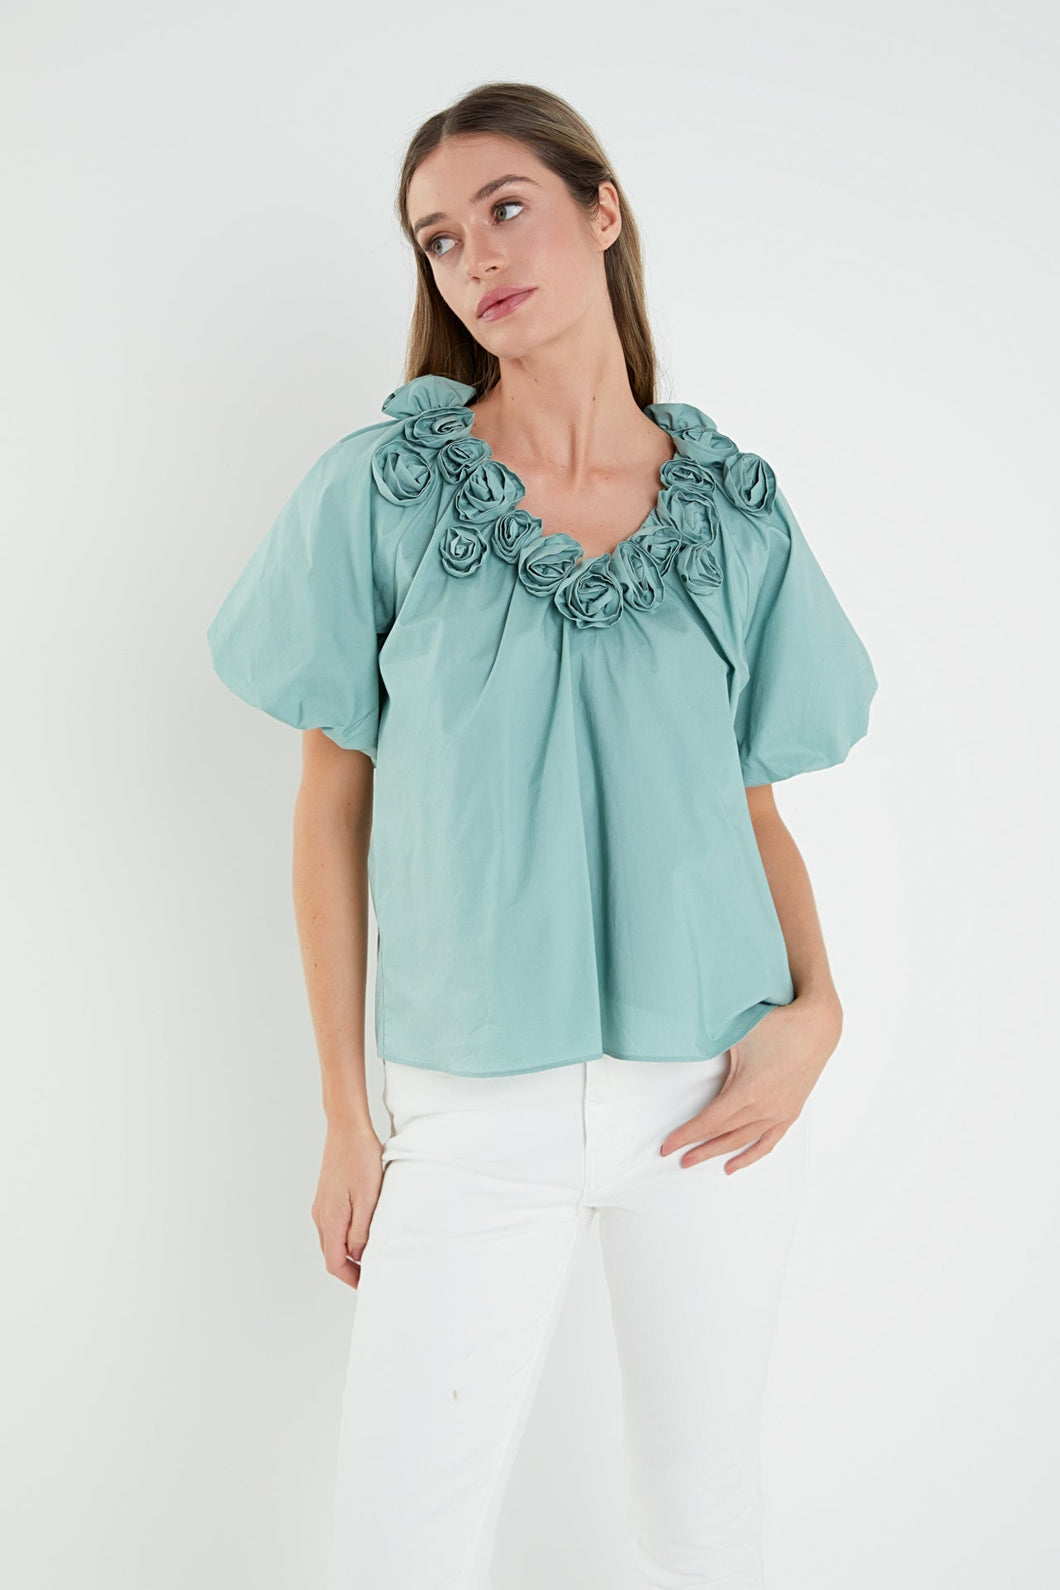 English Factory flower neckline blouse (SZ XS-L)